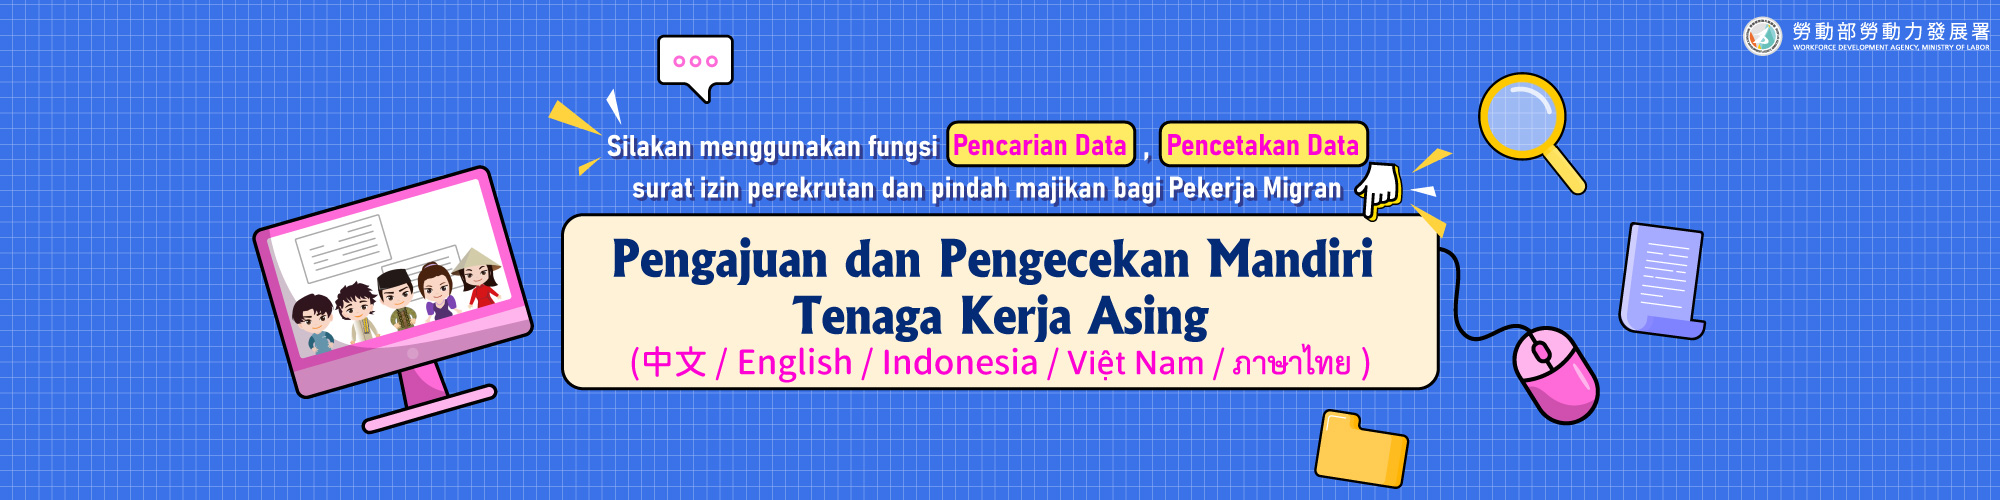 移工網路線上申辦與查詢下載系統-印尼文.jpg